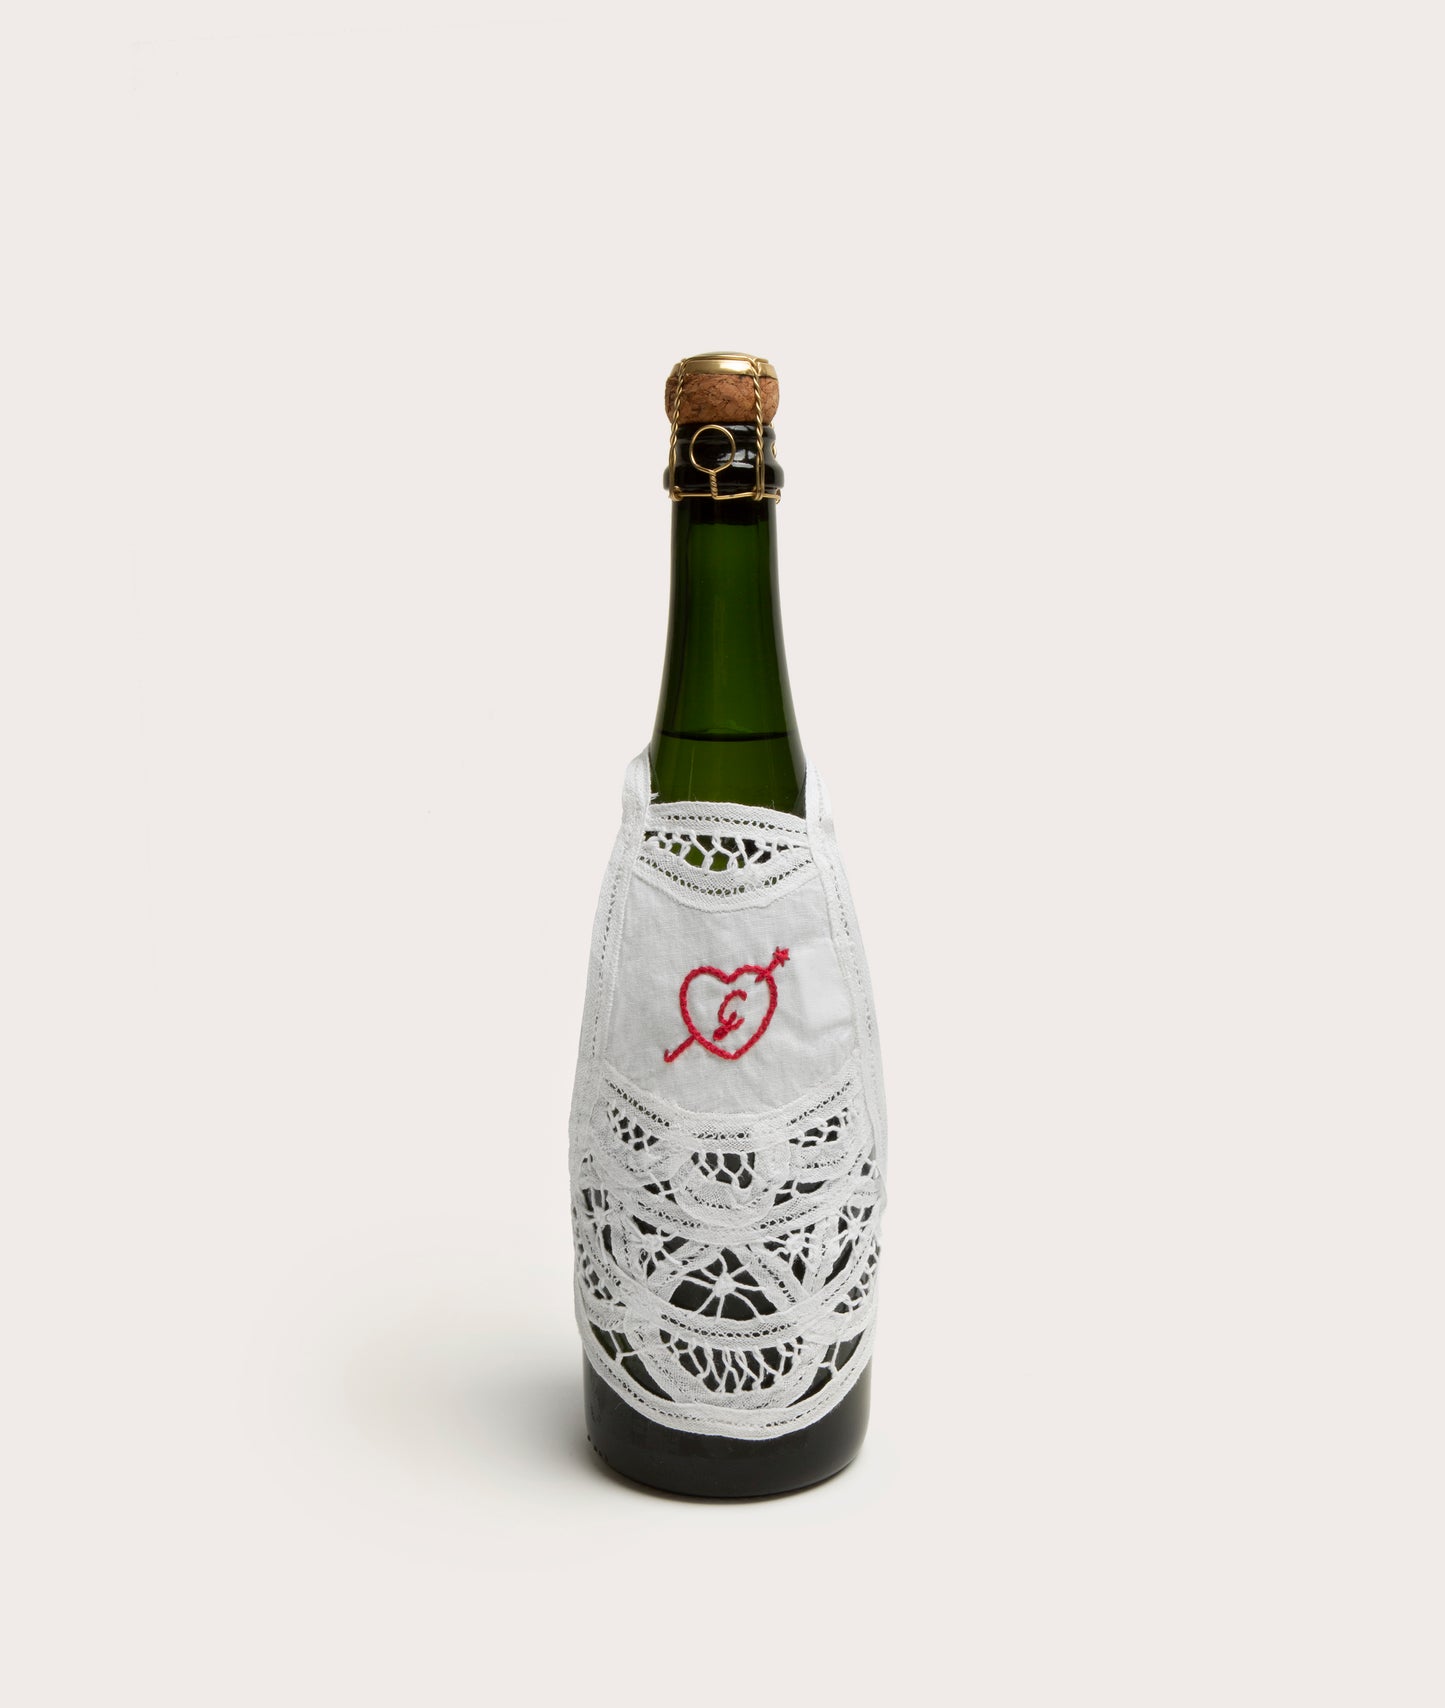 Personalized Bottle Apron, Battenburg Lace